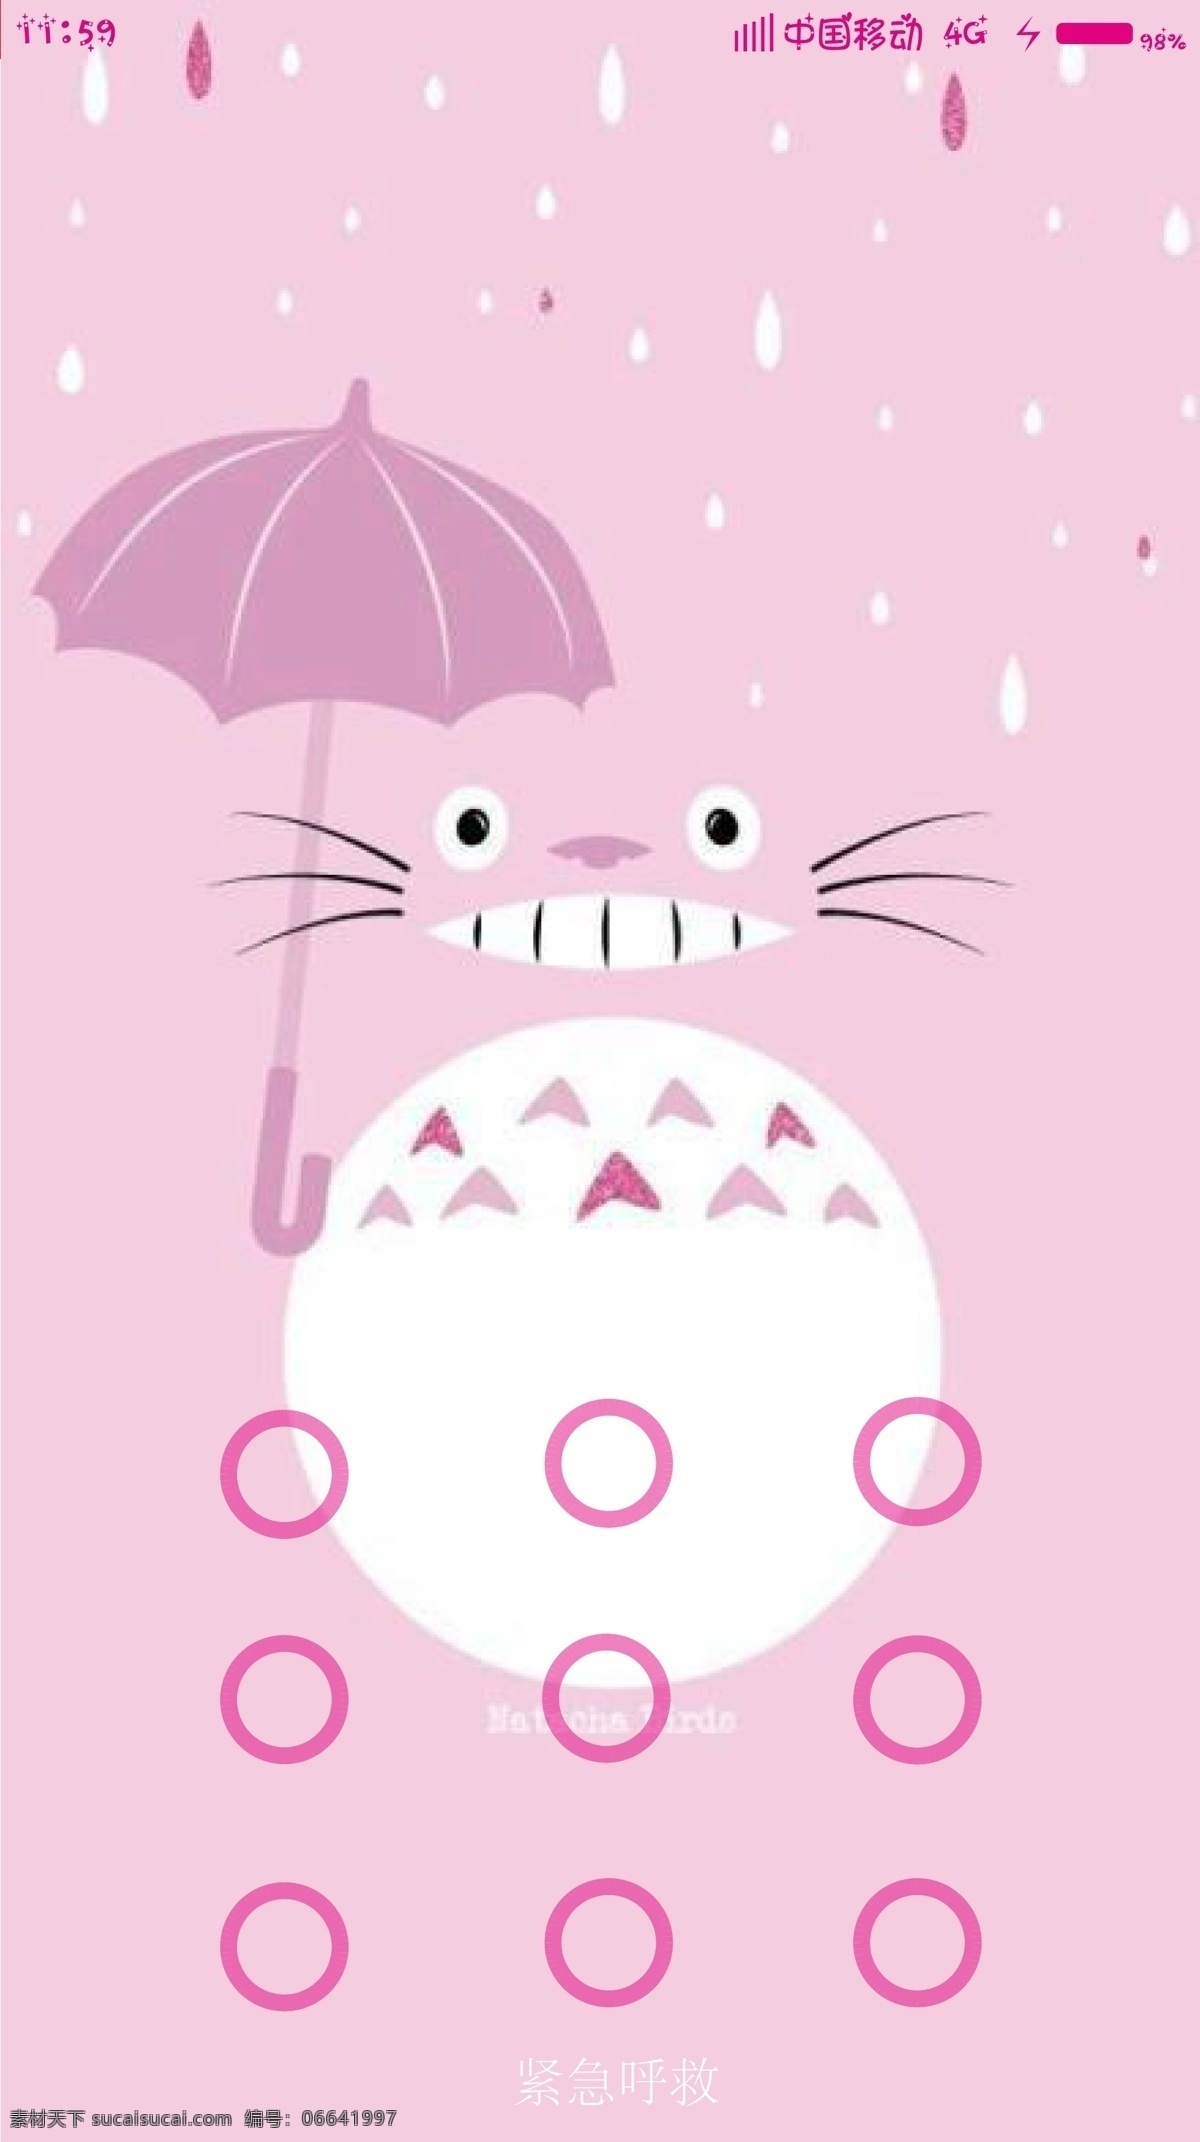 小米红米 龙猫锁屏 手机界面 粉色